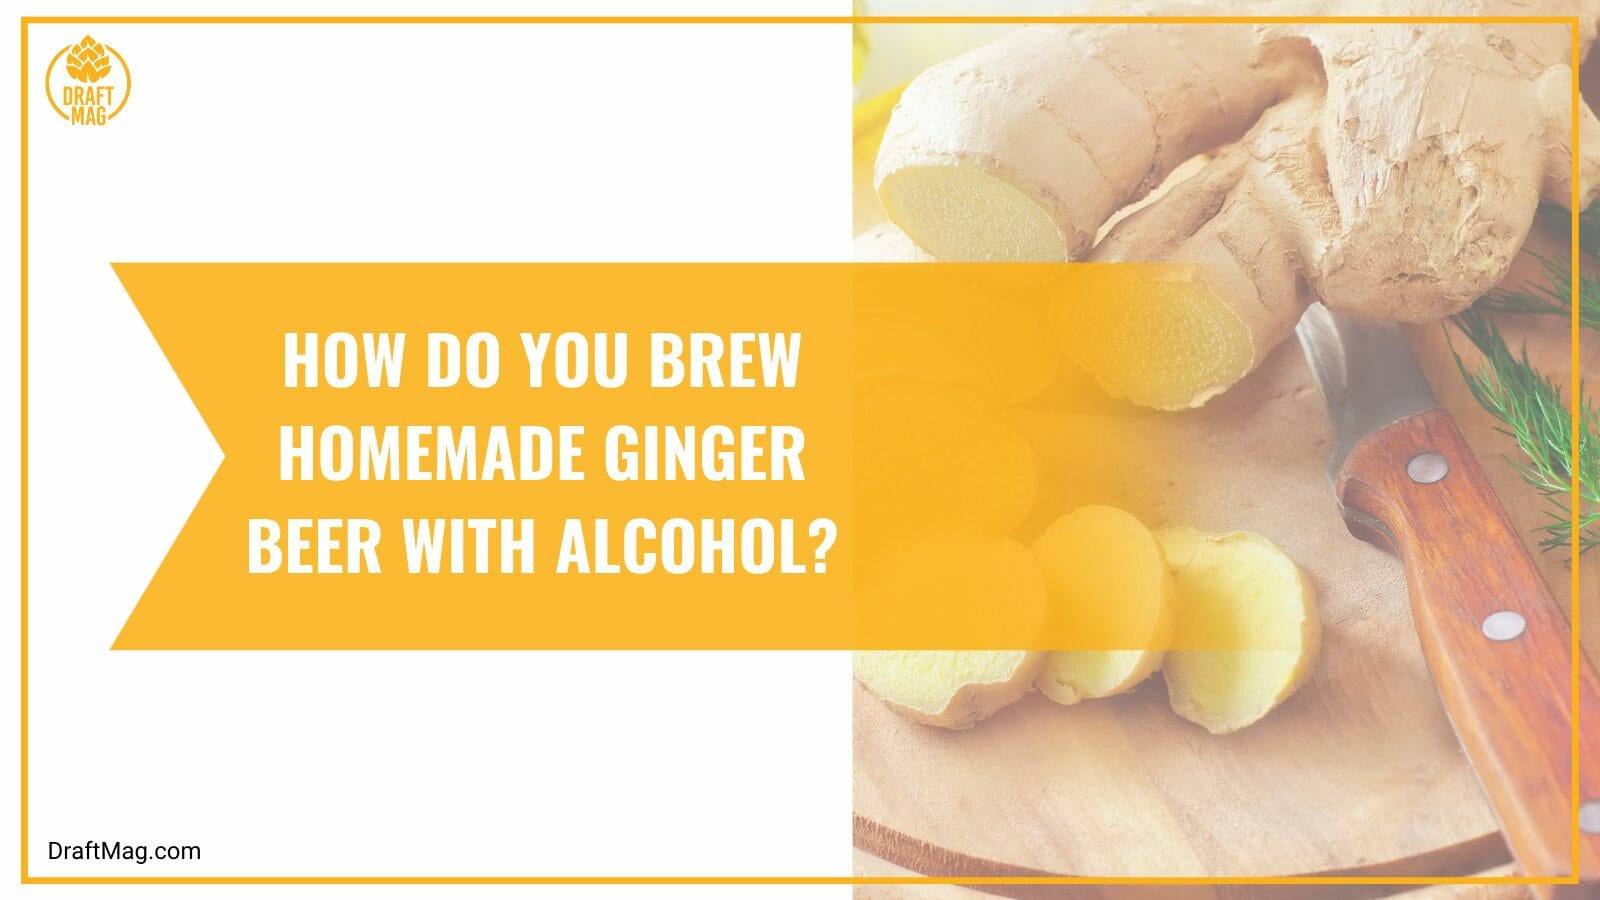 Homemade ginger beer